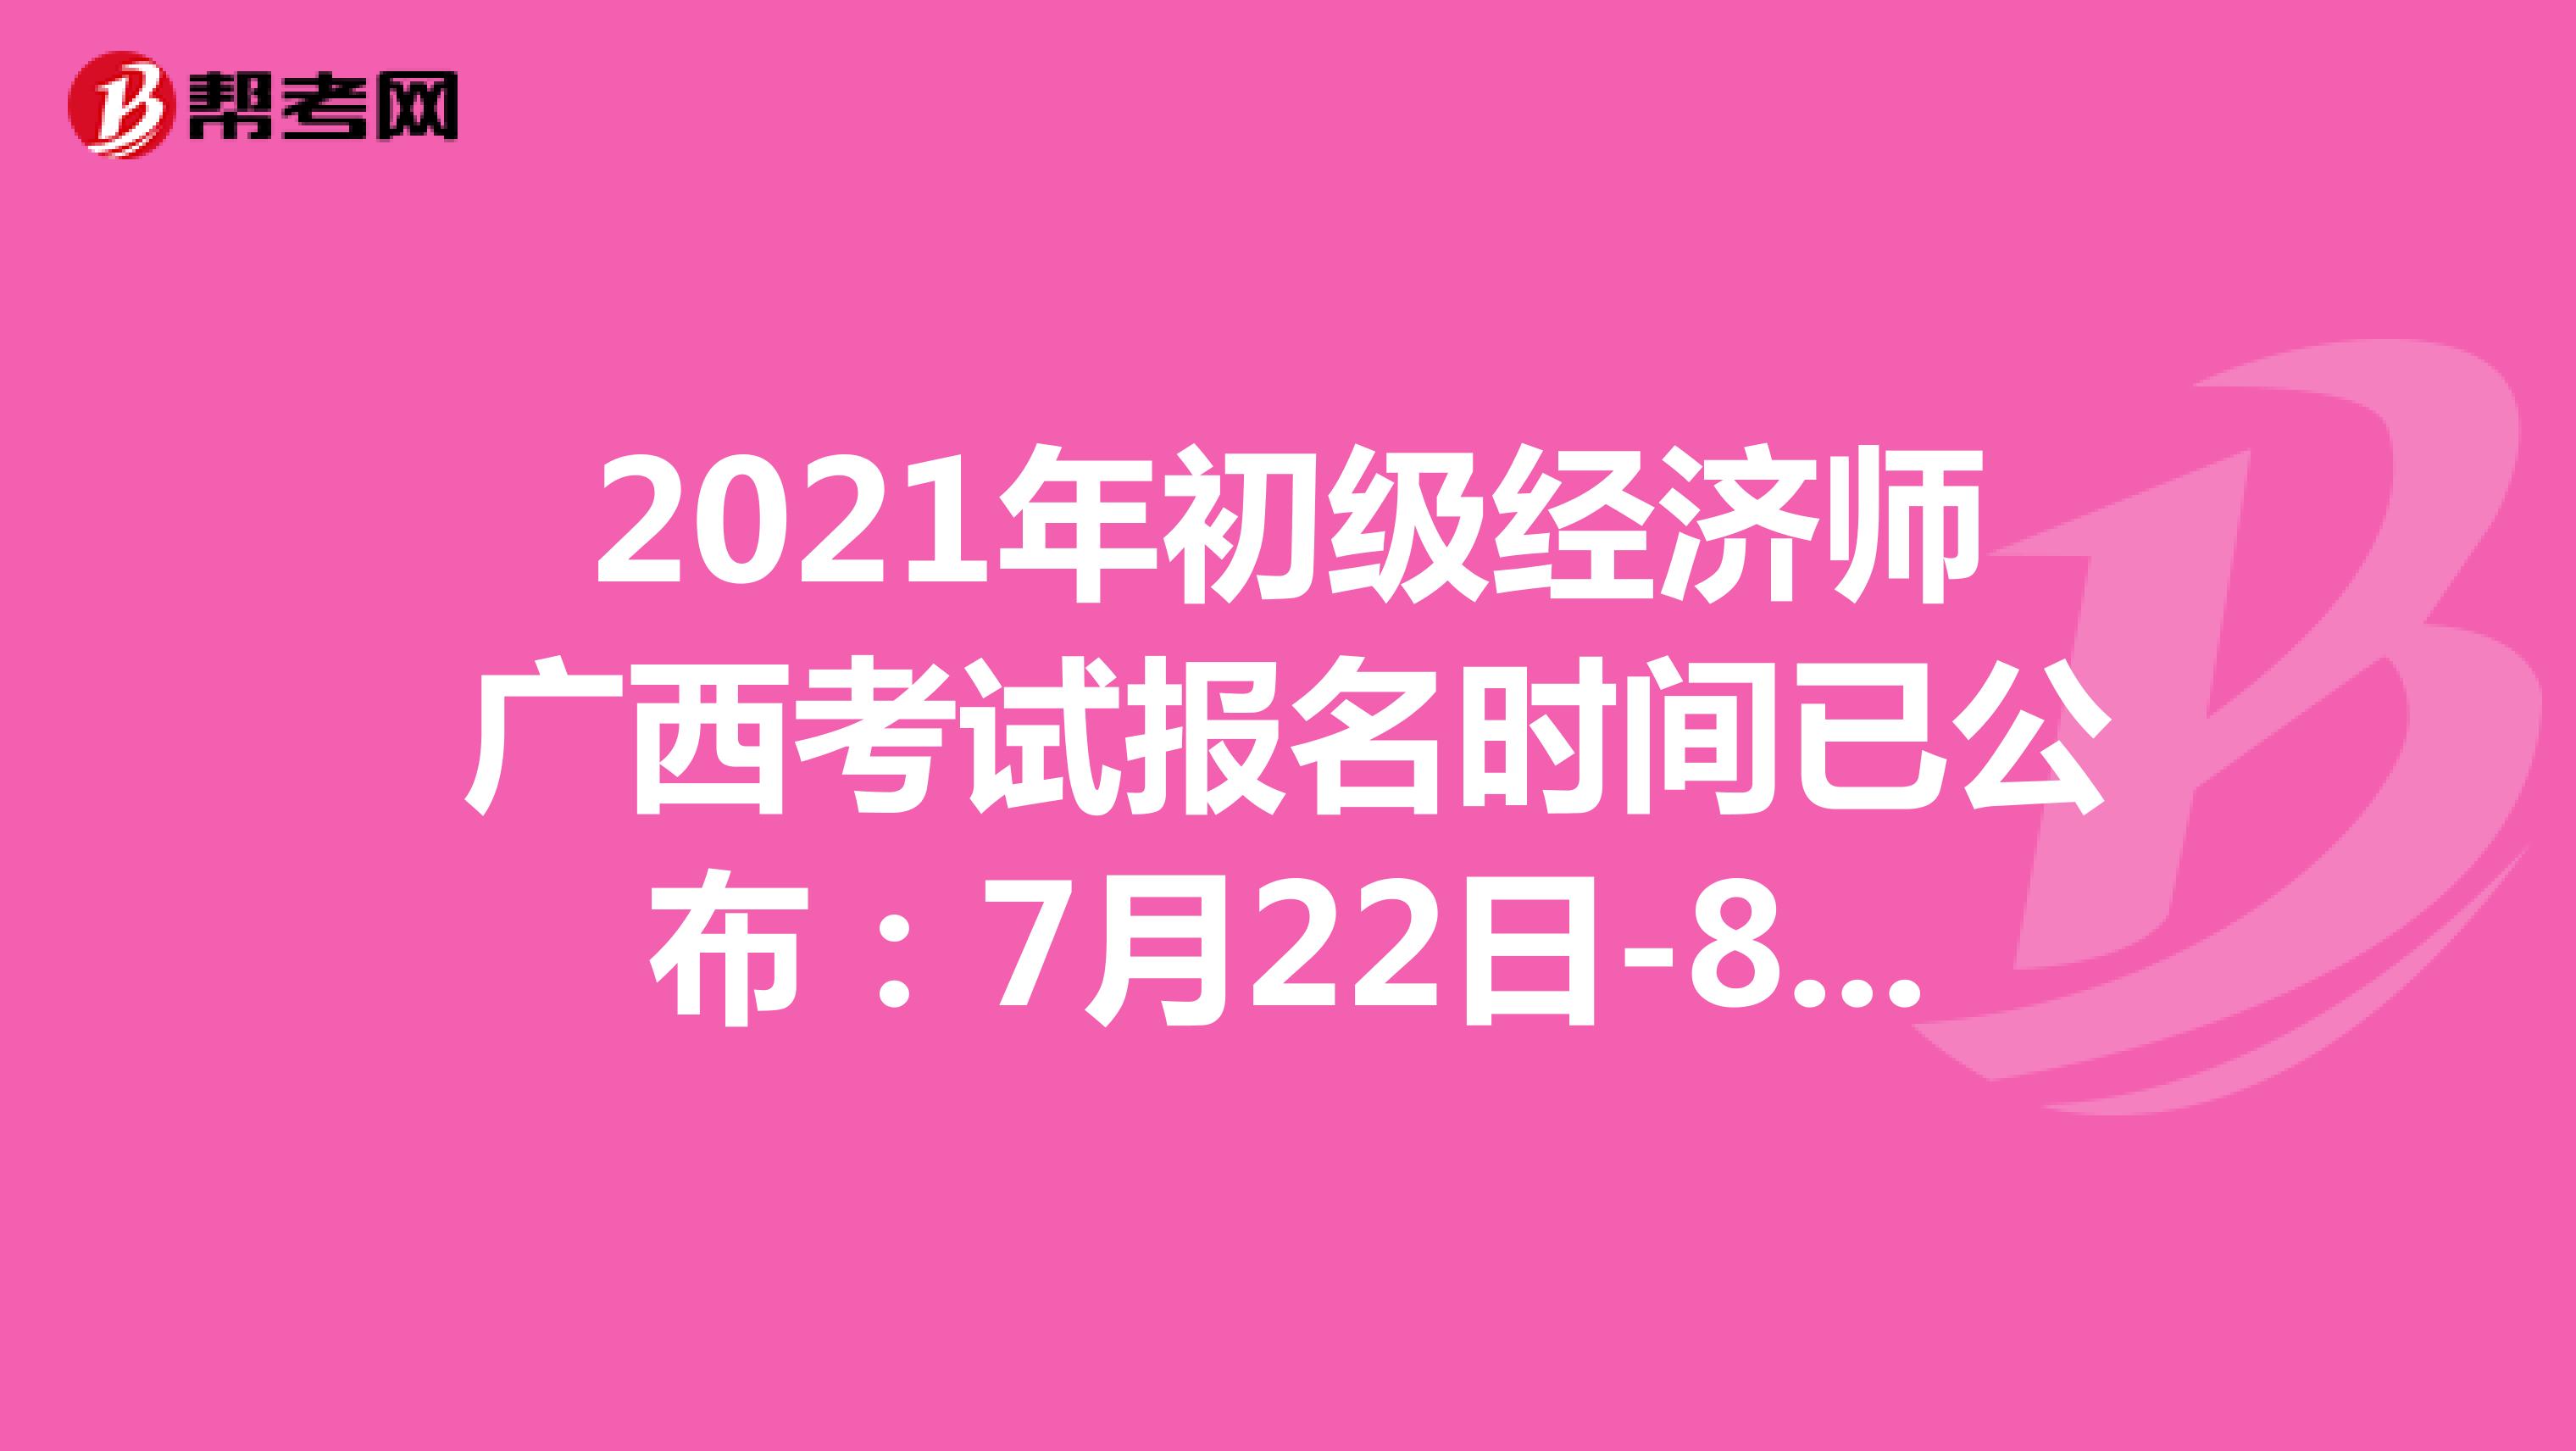 2021年初级经济师广西考试报名时间已公布：7月22日-8月3日！